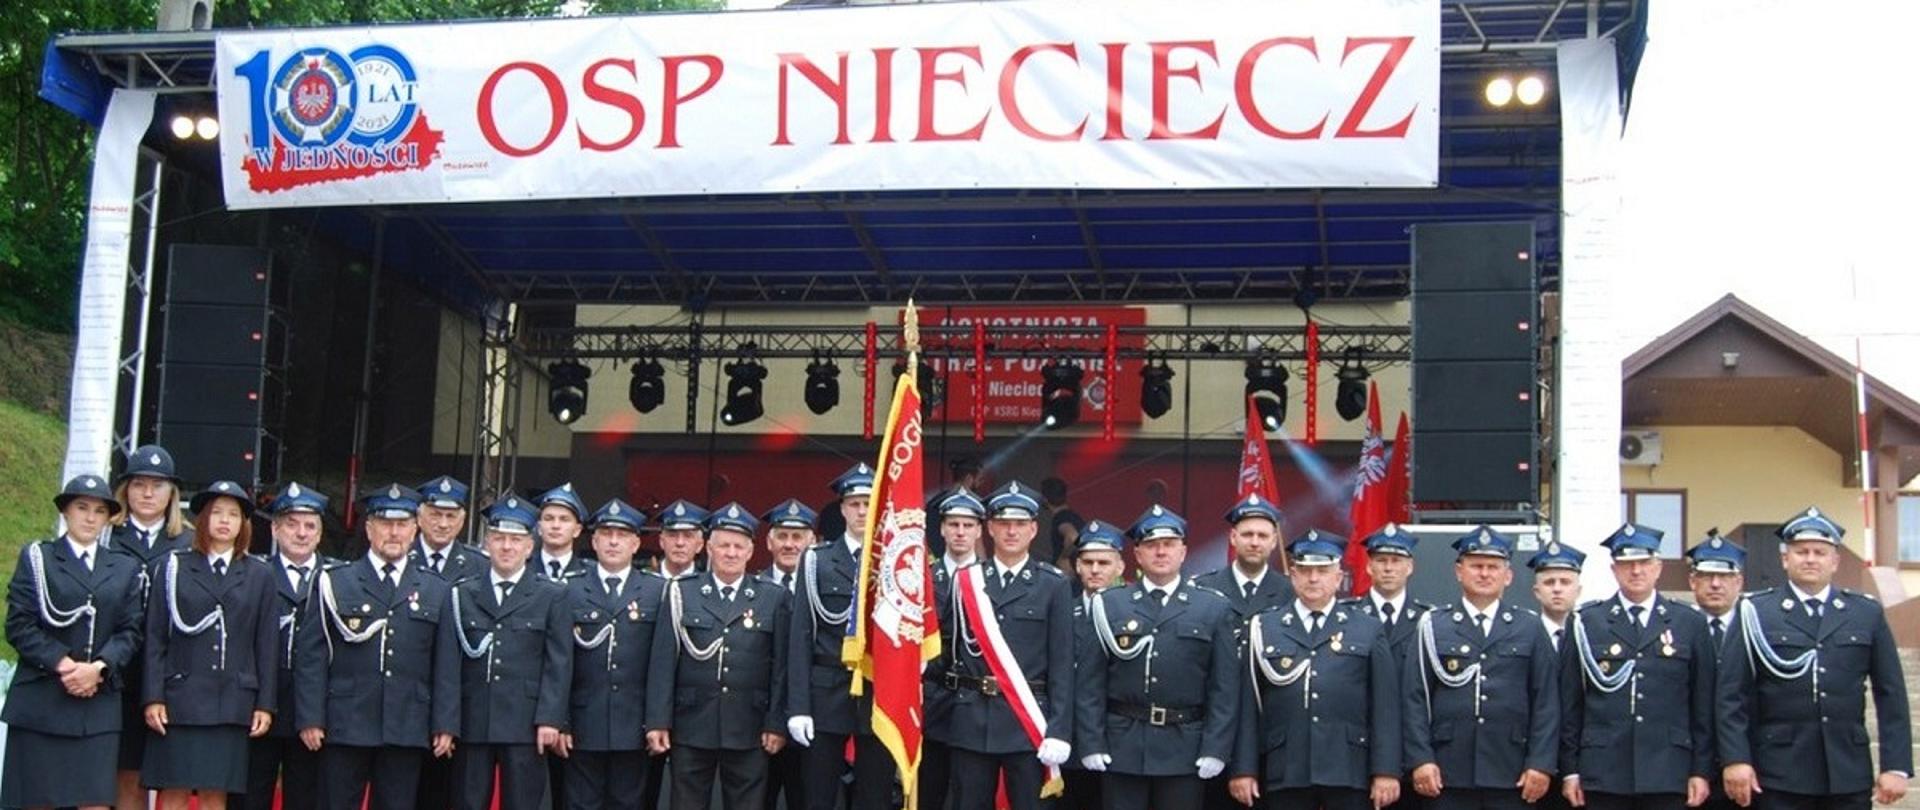 Zdjęcie grupowe Strażaków z Jednostki OSP w Niecieczy ze Sztandarem jednostki. Strażacy ustawieni w dwuszeregu. W tle scena, a na jej szczycie biały baner z logo 100 lat w jedności i napisem OSP Nieciecz.